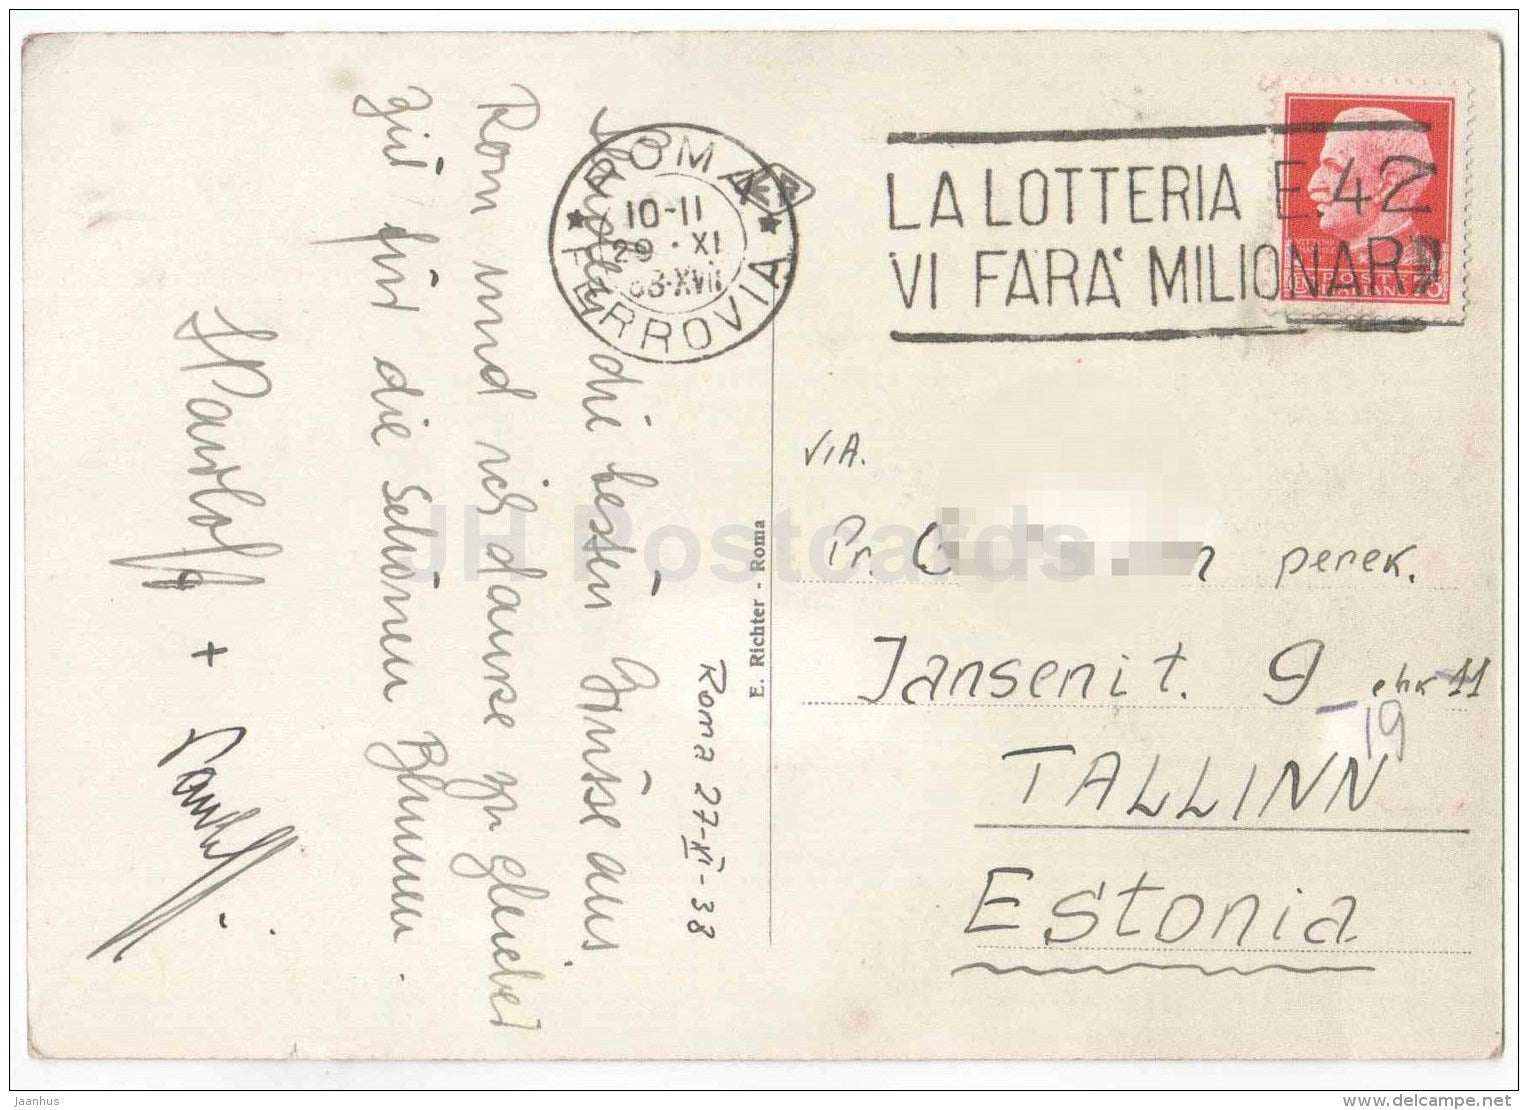 Piazza e Basilica di S. Pietro - square - Roma - Rome - 40 - Italy - sent from Italy Rome to Estonia Tallinn 1938 - JH Postcards